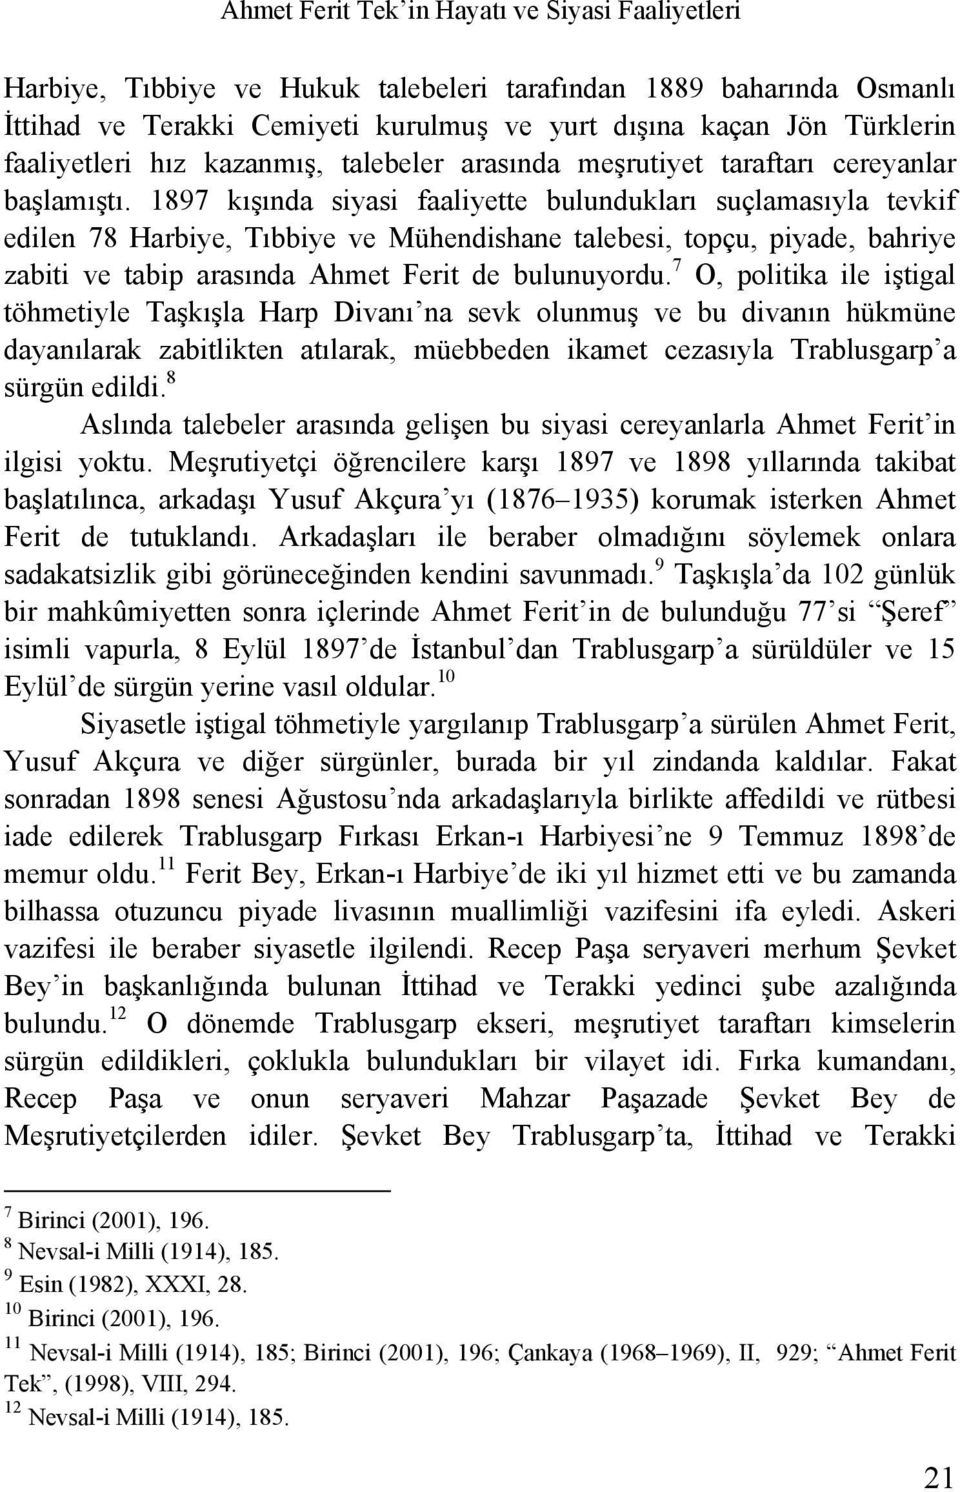 1897 kışında siyasi faaliyette bulundukları suçlamasıyla tevkif edilen 78 Harbiye, Tıbbiye ve Mühendishane talebesi, topçu, piyade, bahriye zabiti ve tabip arasında Ahmet Ferit de bulunuyordu.